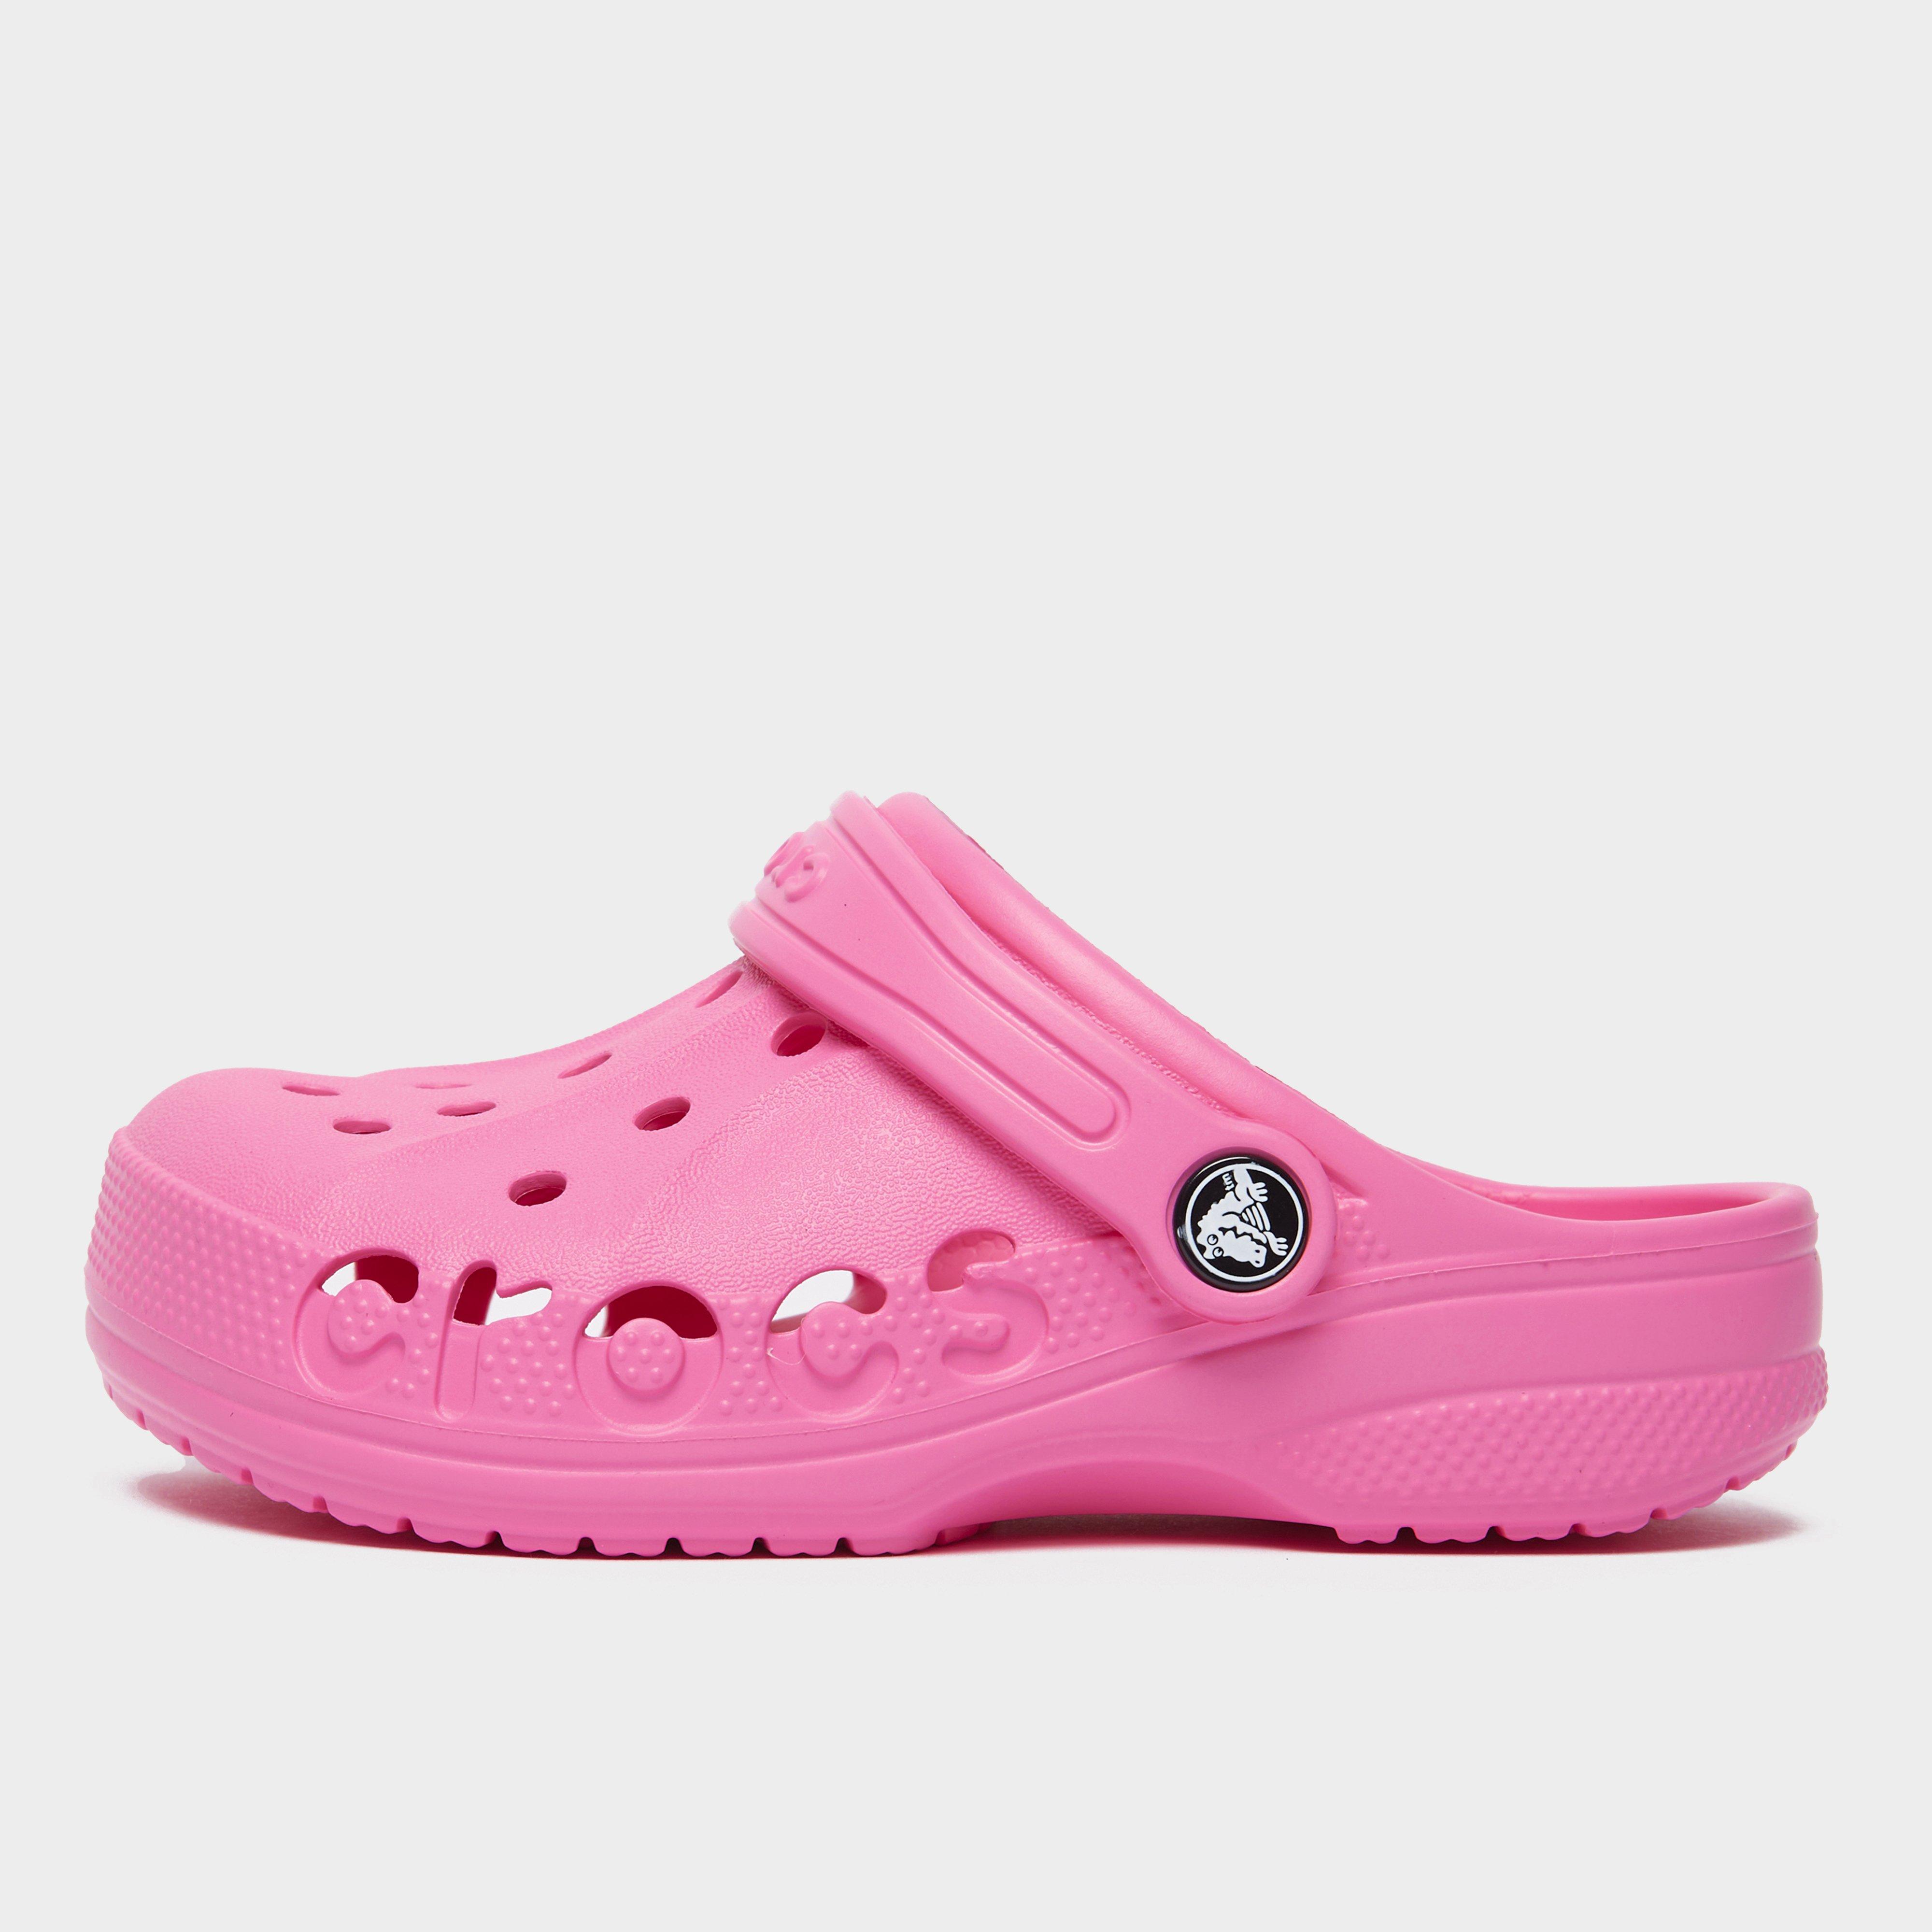 Crocs Kids Baya Clog - Pink/pink  Pink/pink